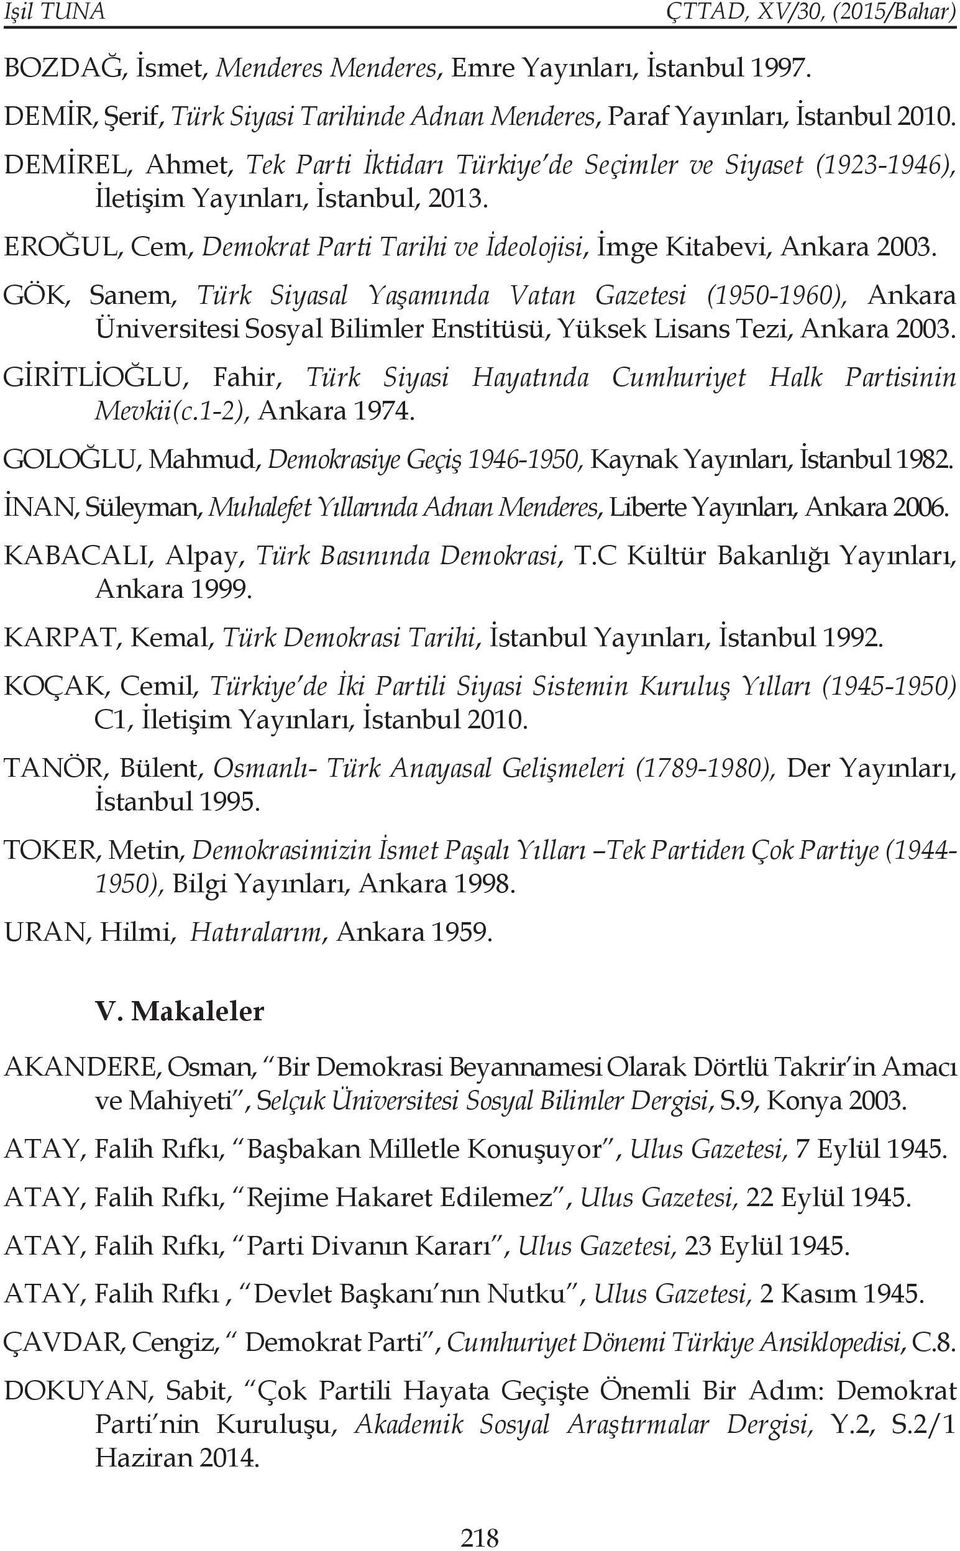 GÖK, Sanem, Türk Siyasal Yaşamında Vatan Gazetesi (1950-1960), Ankara Üniversitesi Sosyal Bilimler Enstitüsü, Yüksek Lisans Tezi, Ankara 2003.